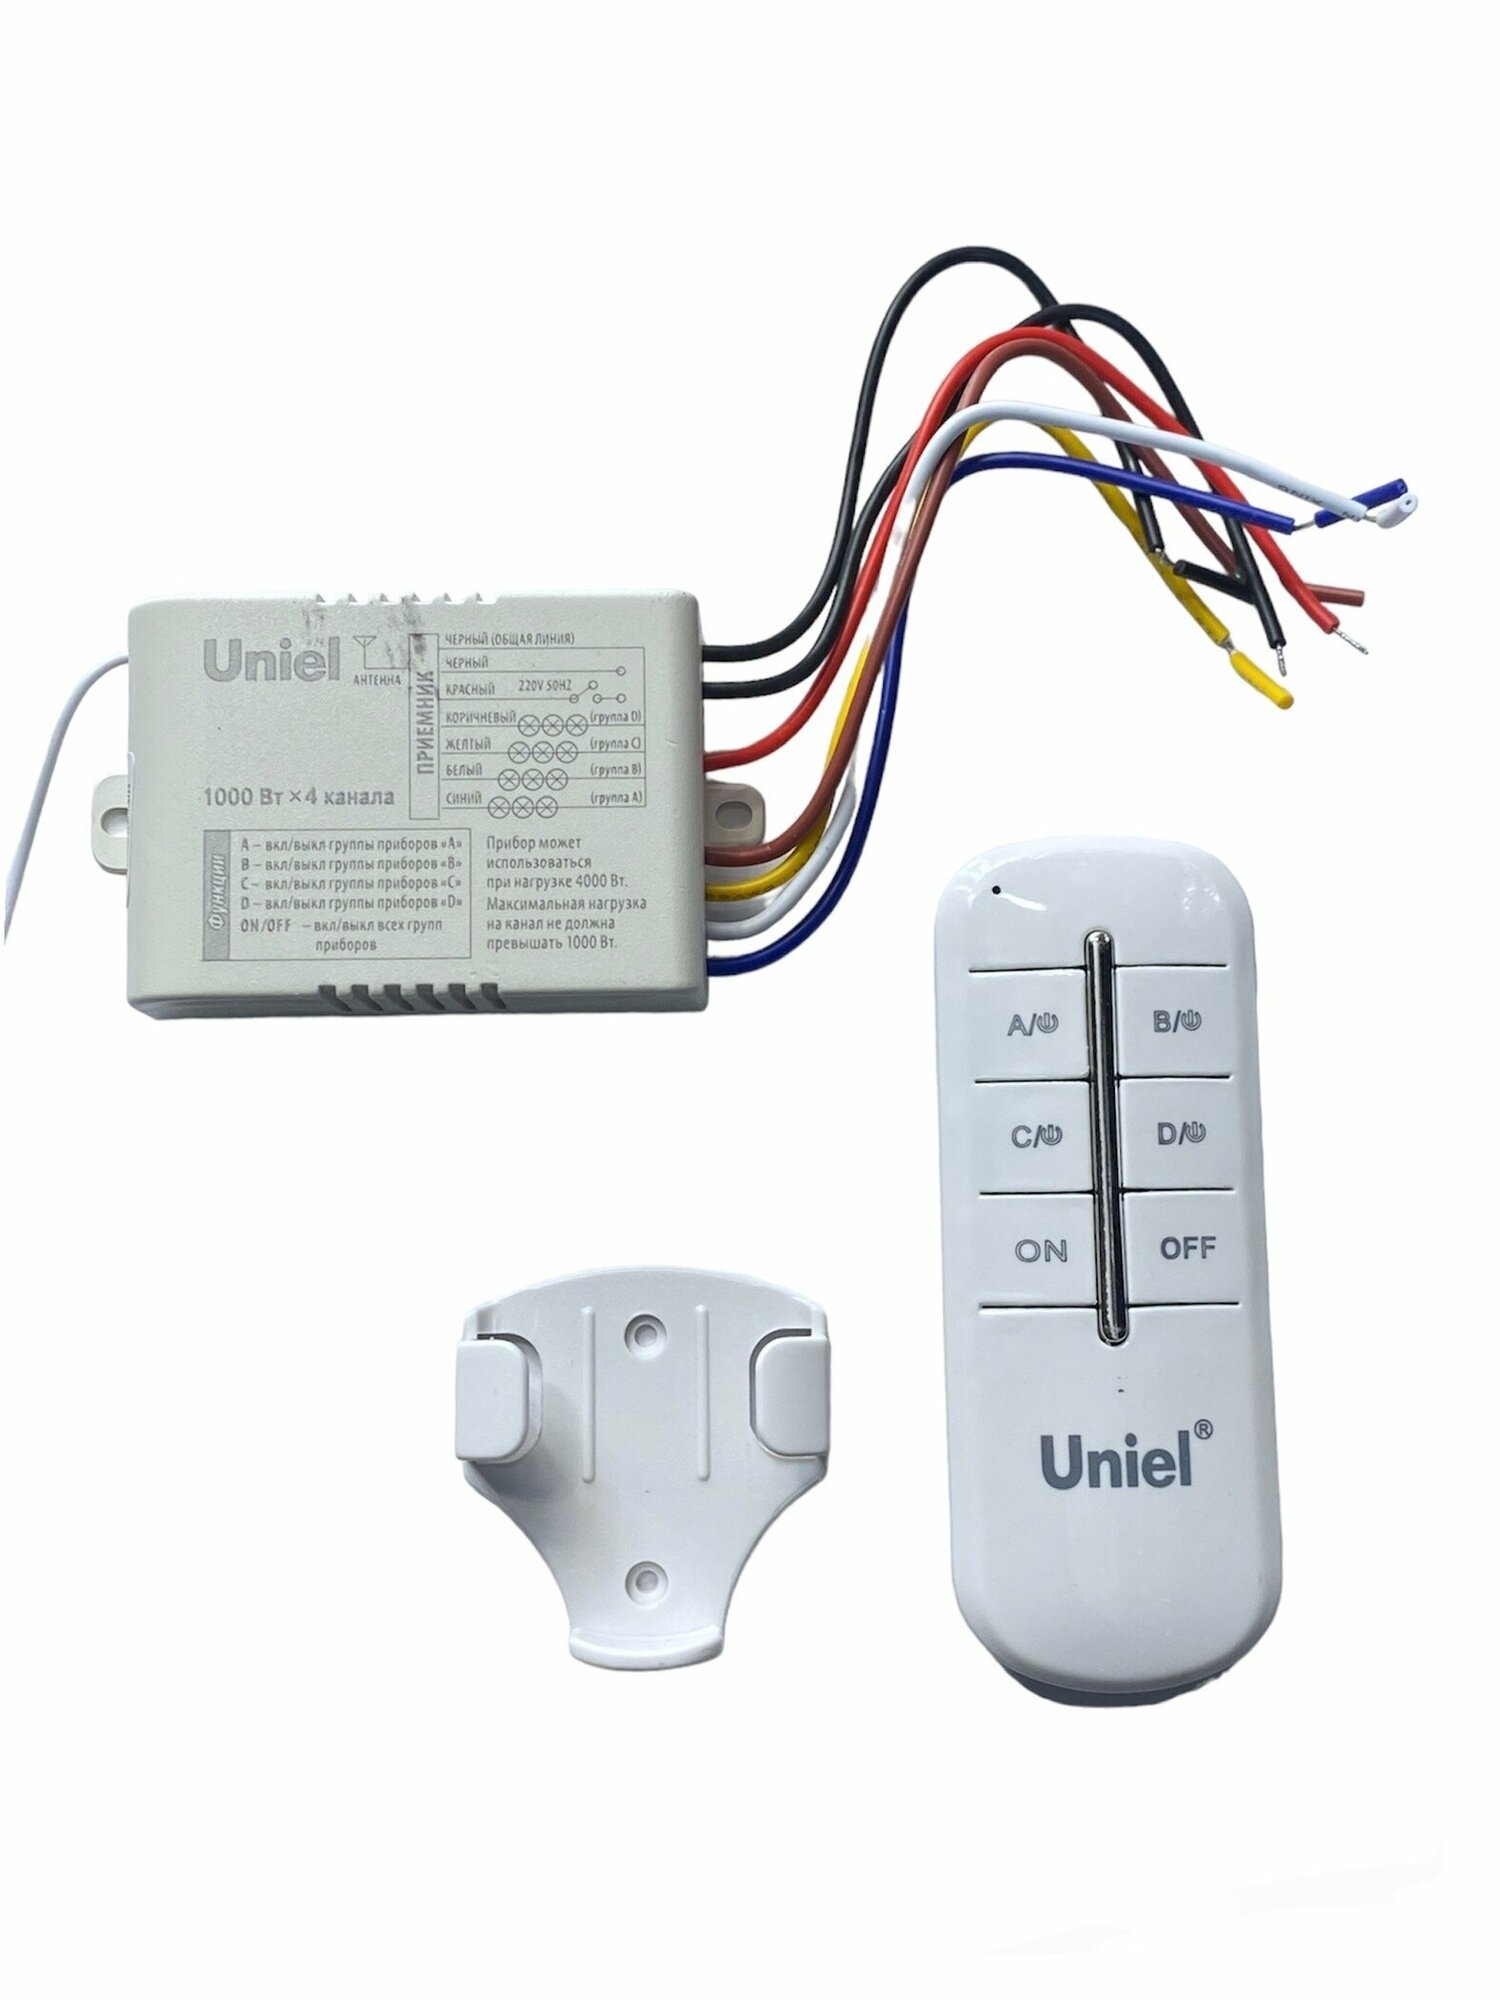 Пульт управления освещением Uniel UCH-P005-G4, 4 канала, 1000 Вт, 30 м